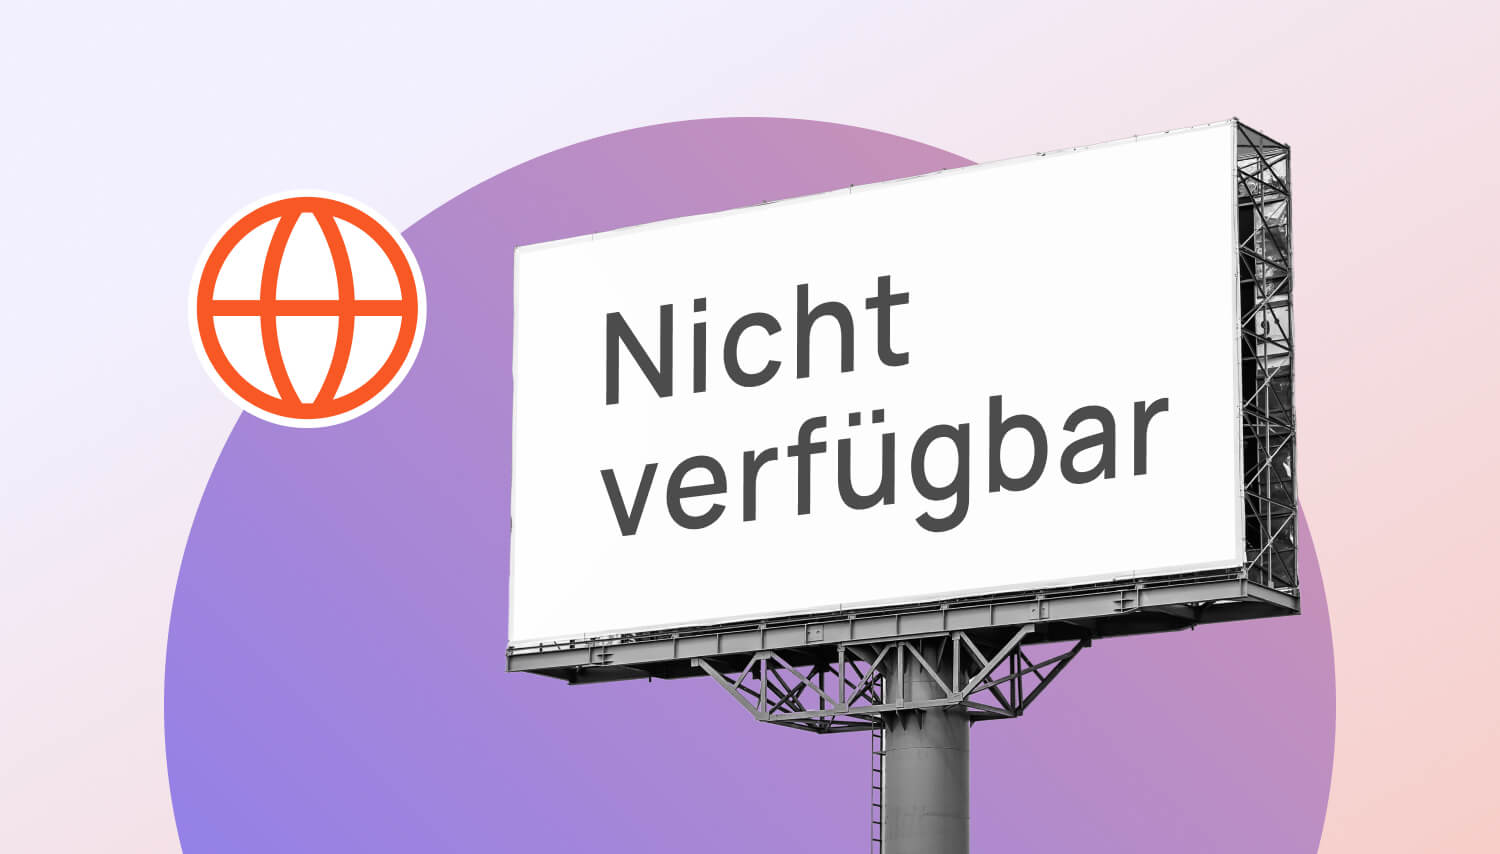 Werbetafel mit dem Schriftzug "Nicht verfügbar" auf lila Hintergrund und einem orangen Domain-Icon.